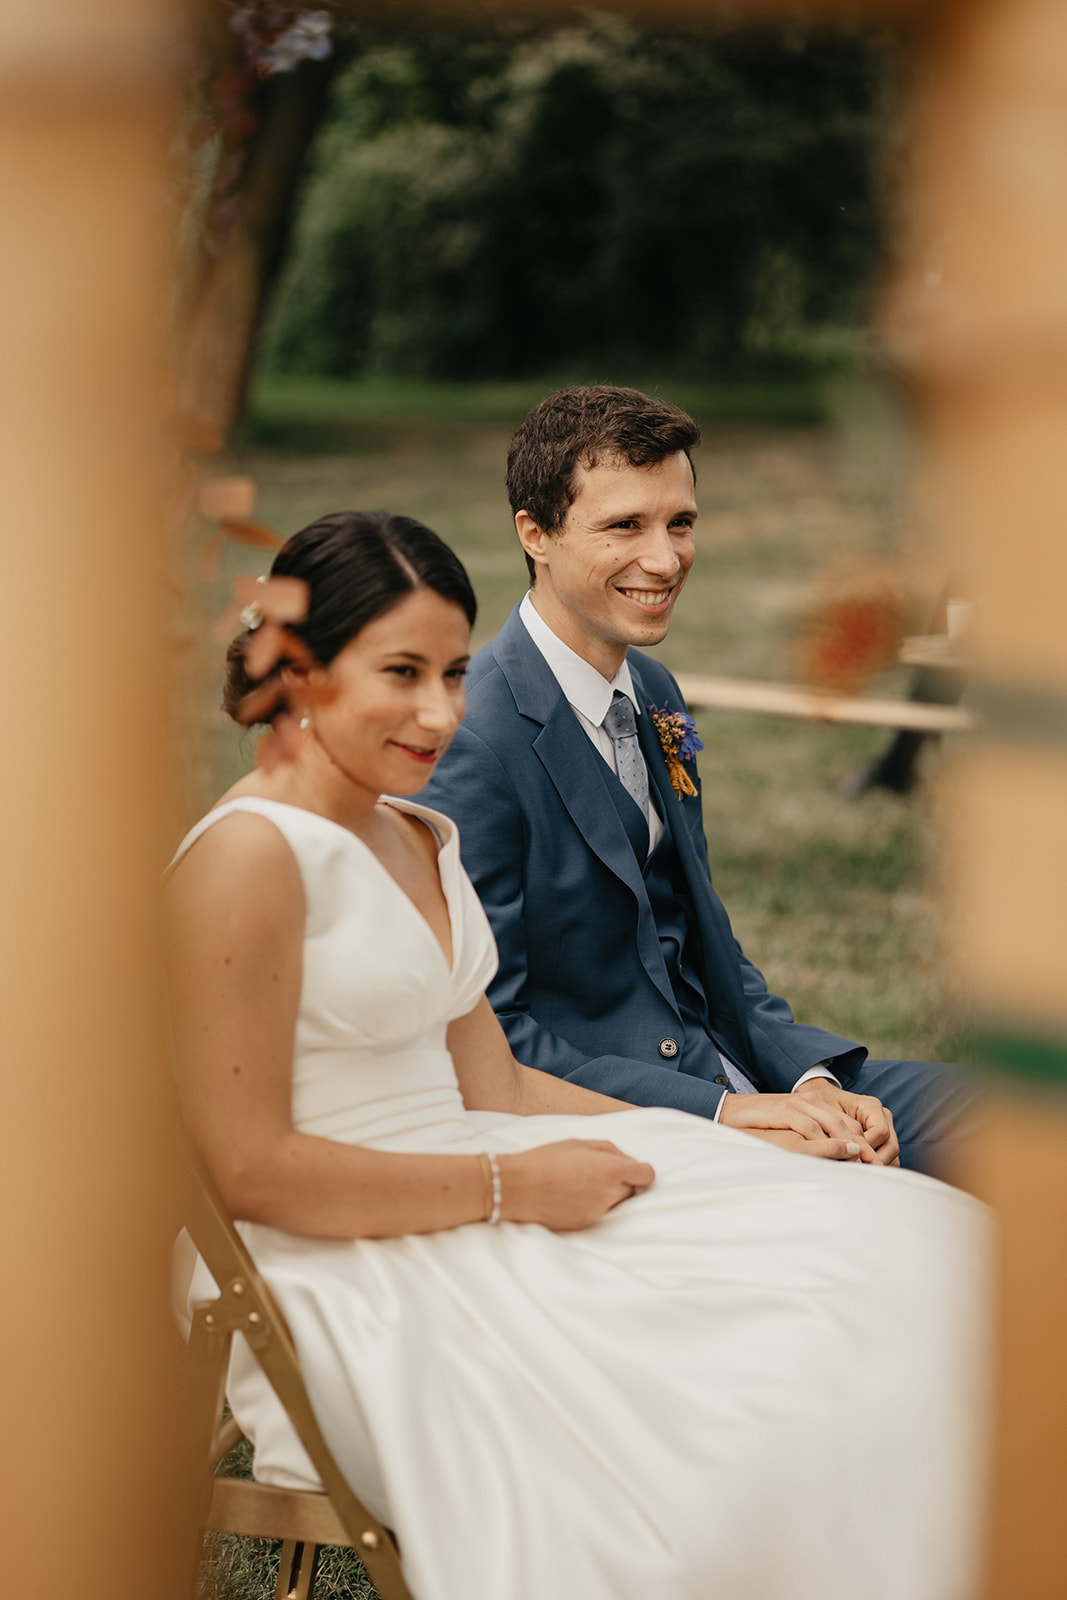 Un jeune couple se marie dans le domaine de la Petite Motte en Normandie dans une ambiance champêtre et romantique.